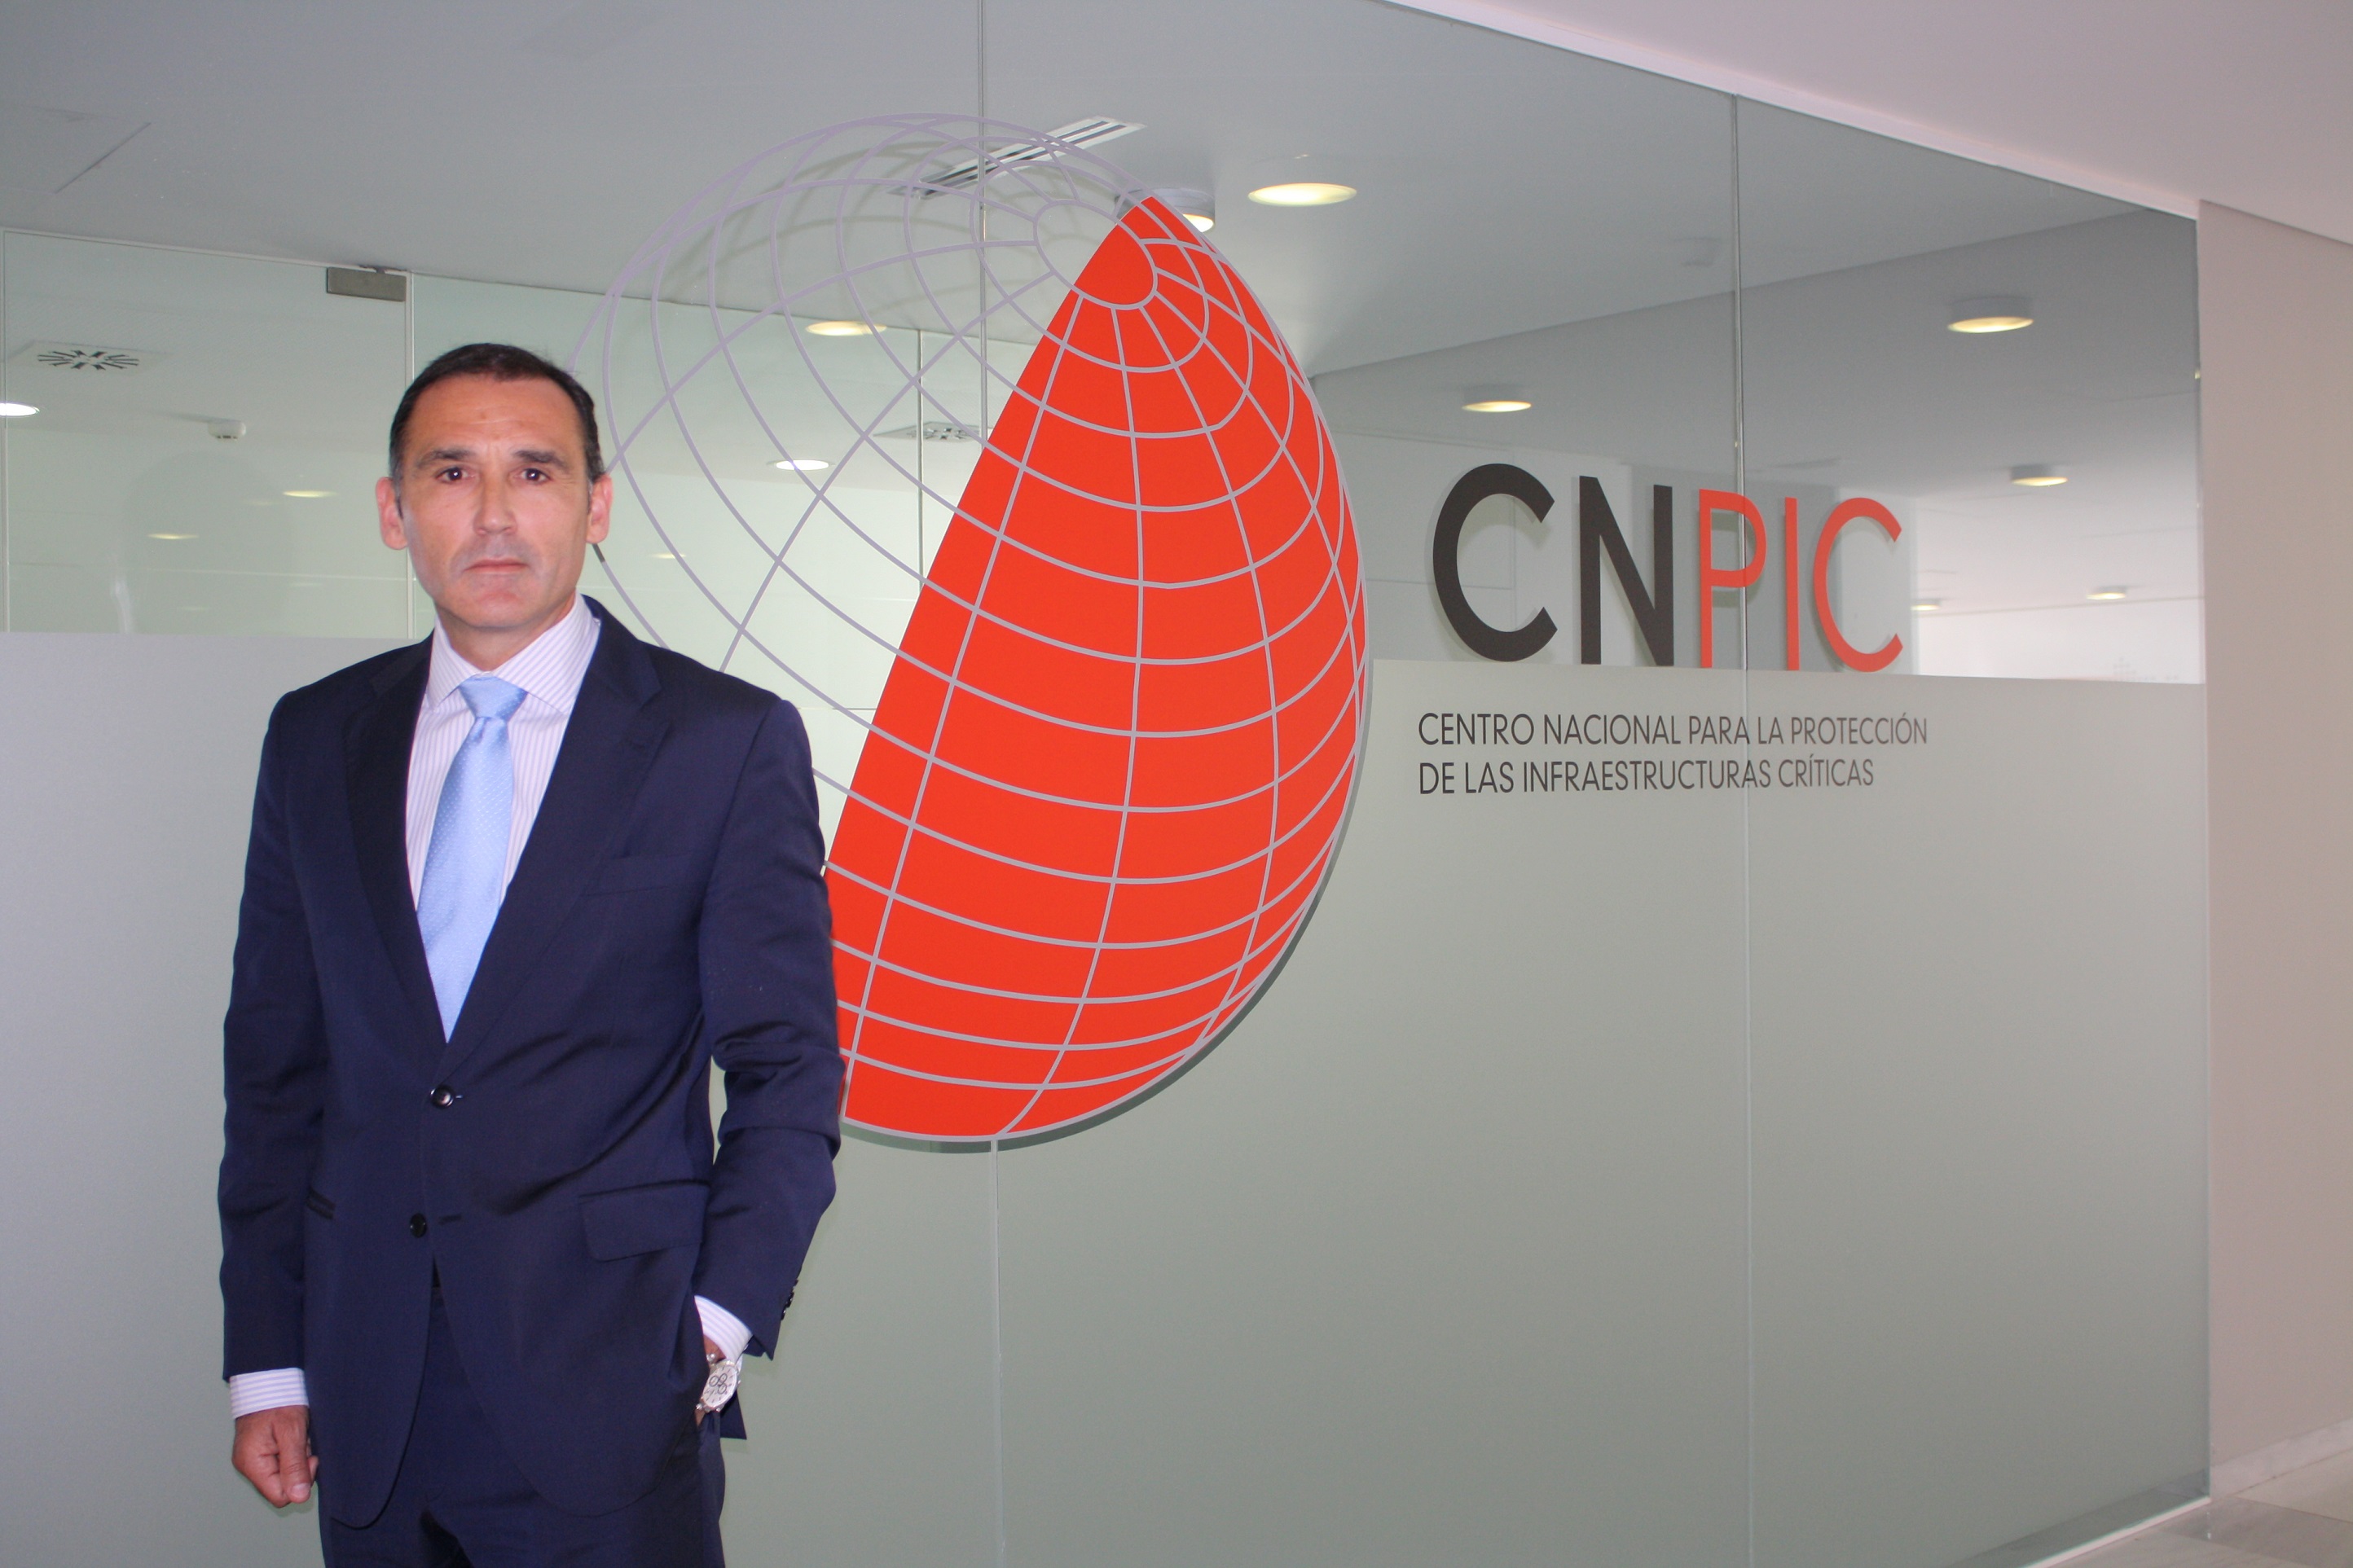 Entrevista con el director del Centro Nacional de Protección de Infraestructuras y Ciberseguridad (CNPIC)